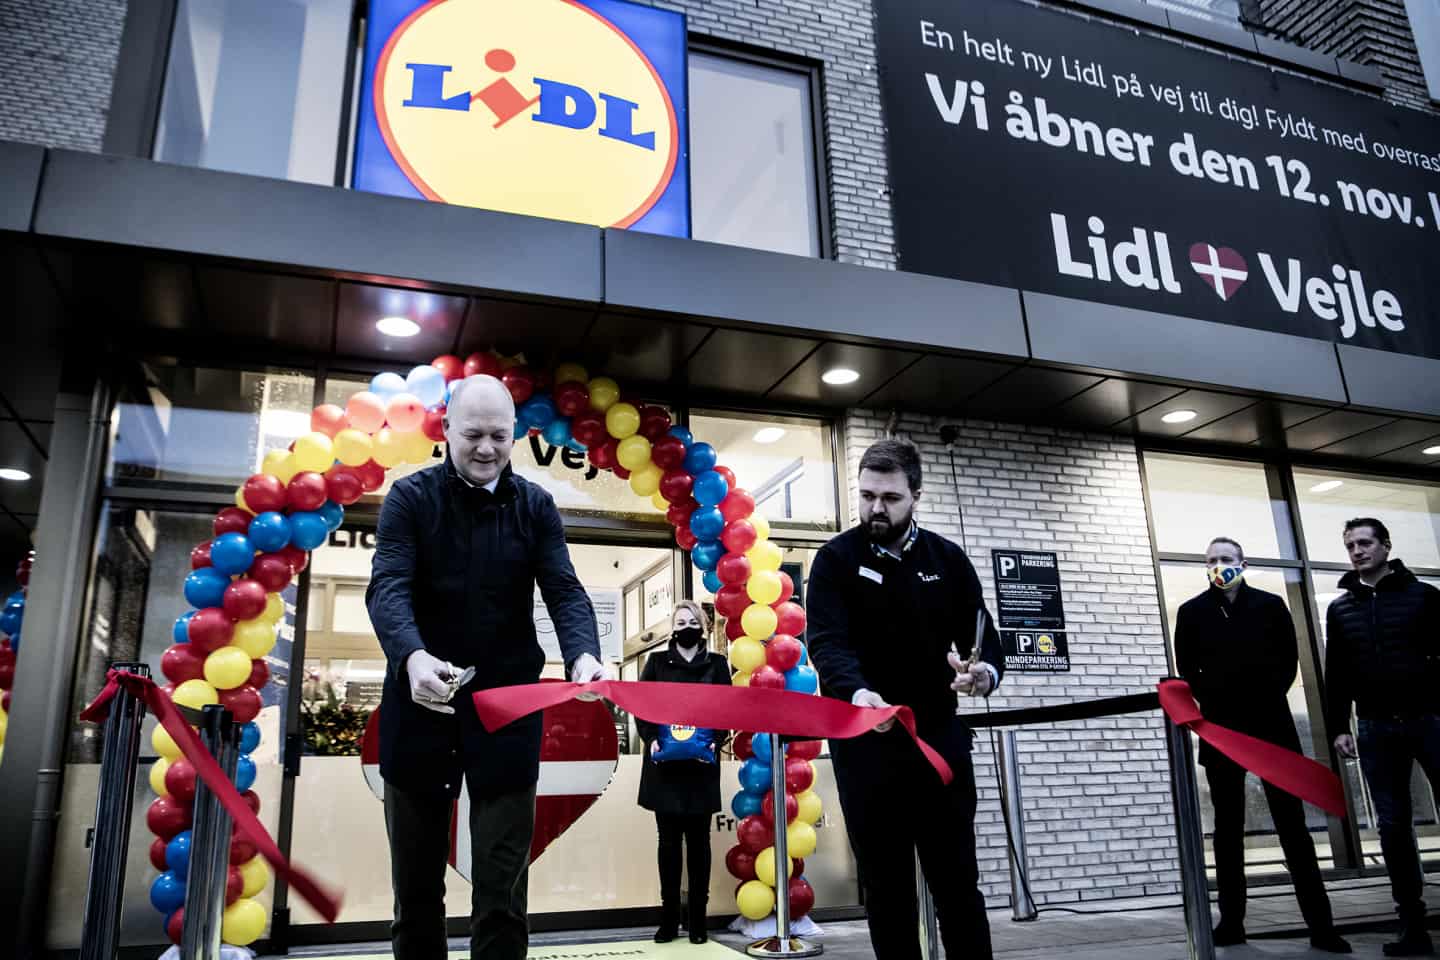 Lidl har åbnet sin 132. butik - er det en butik for fremtiden | vafo.dk